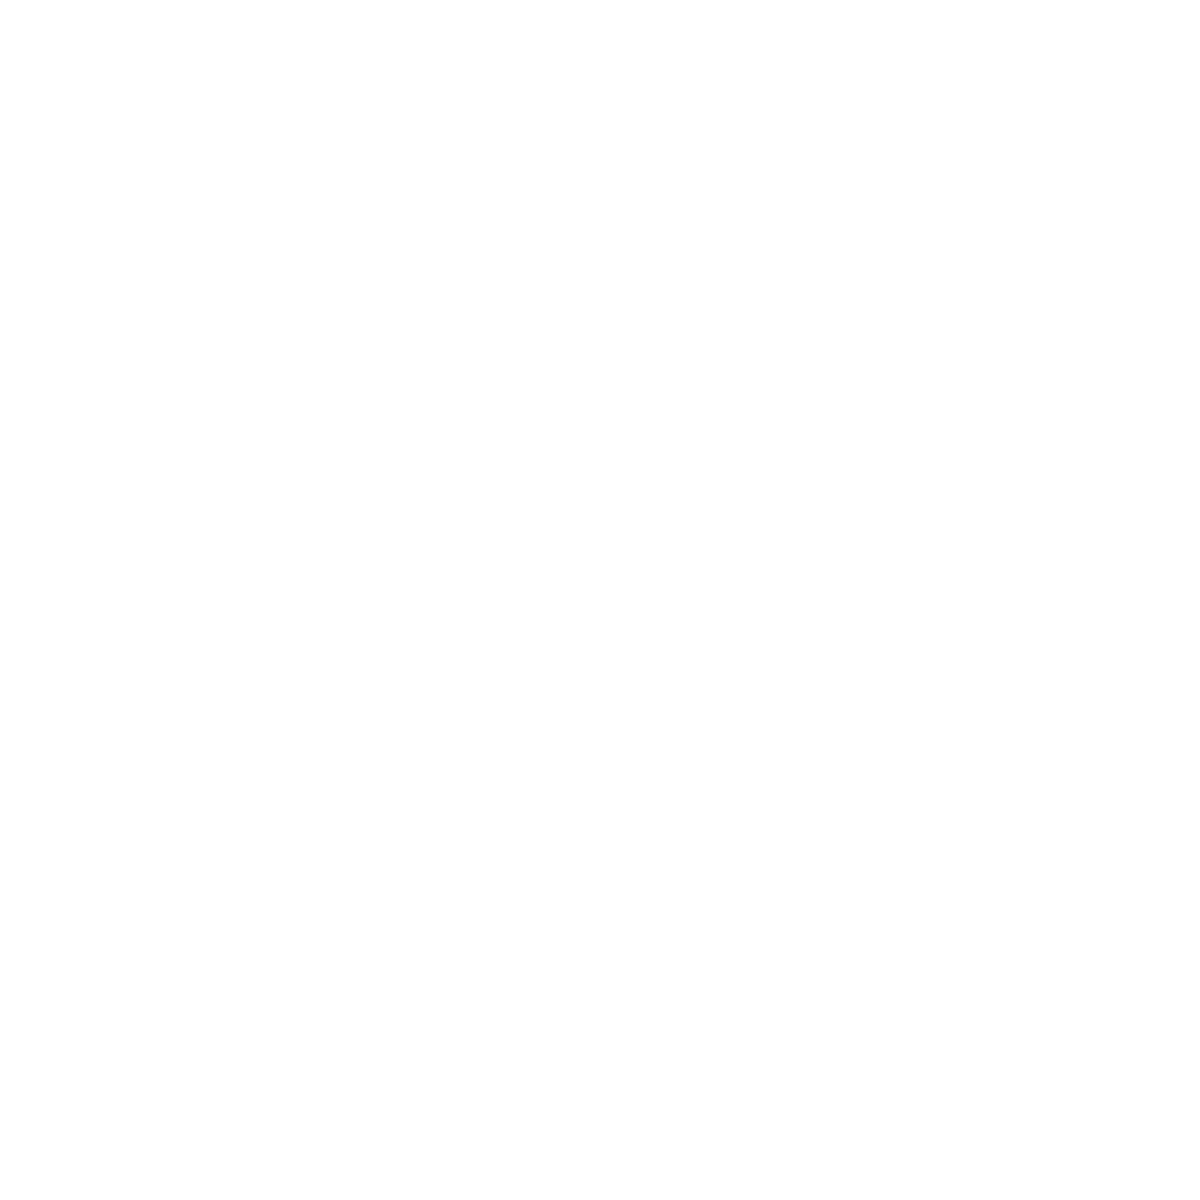 Visual Poetics